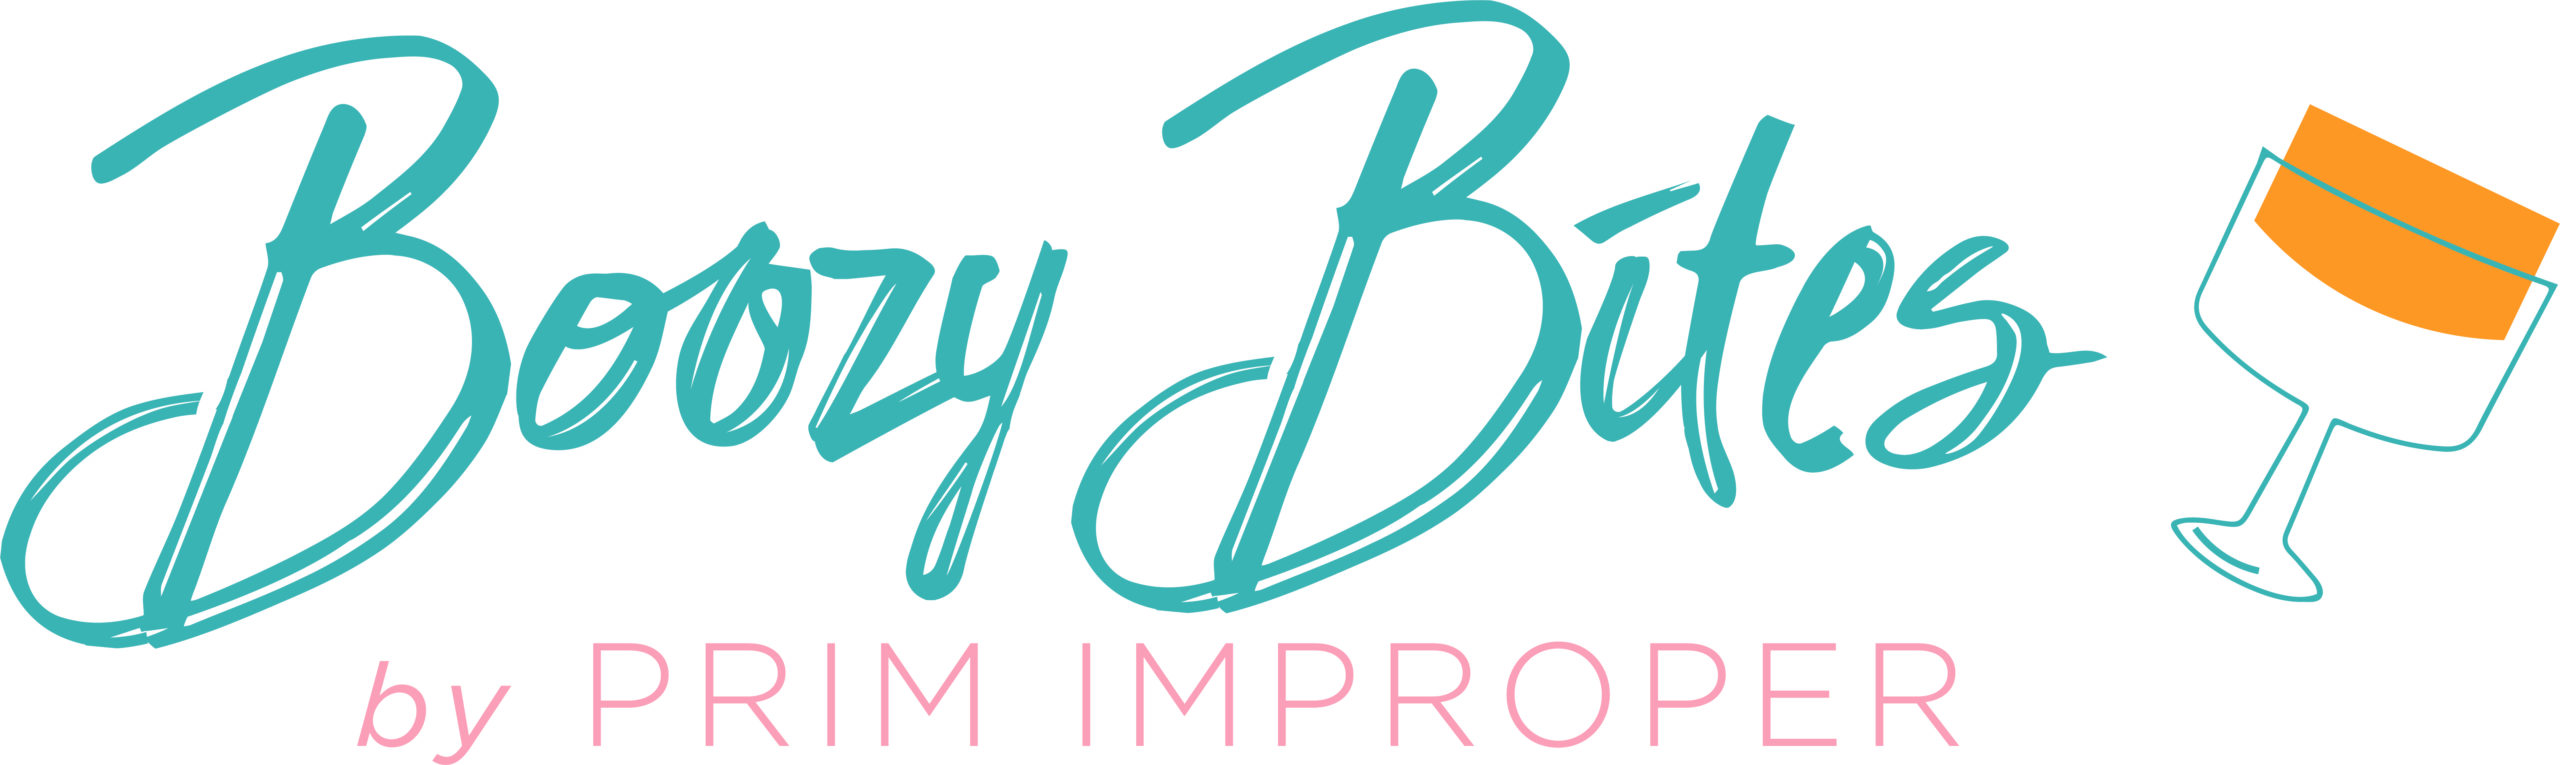 Boozy Bites by Prim Improper Logo Brighton Center